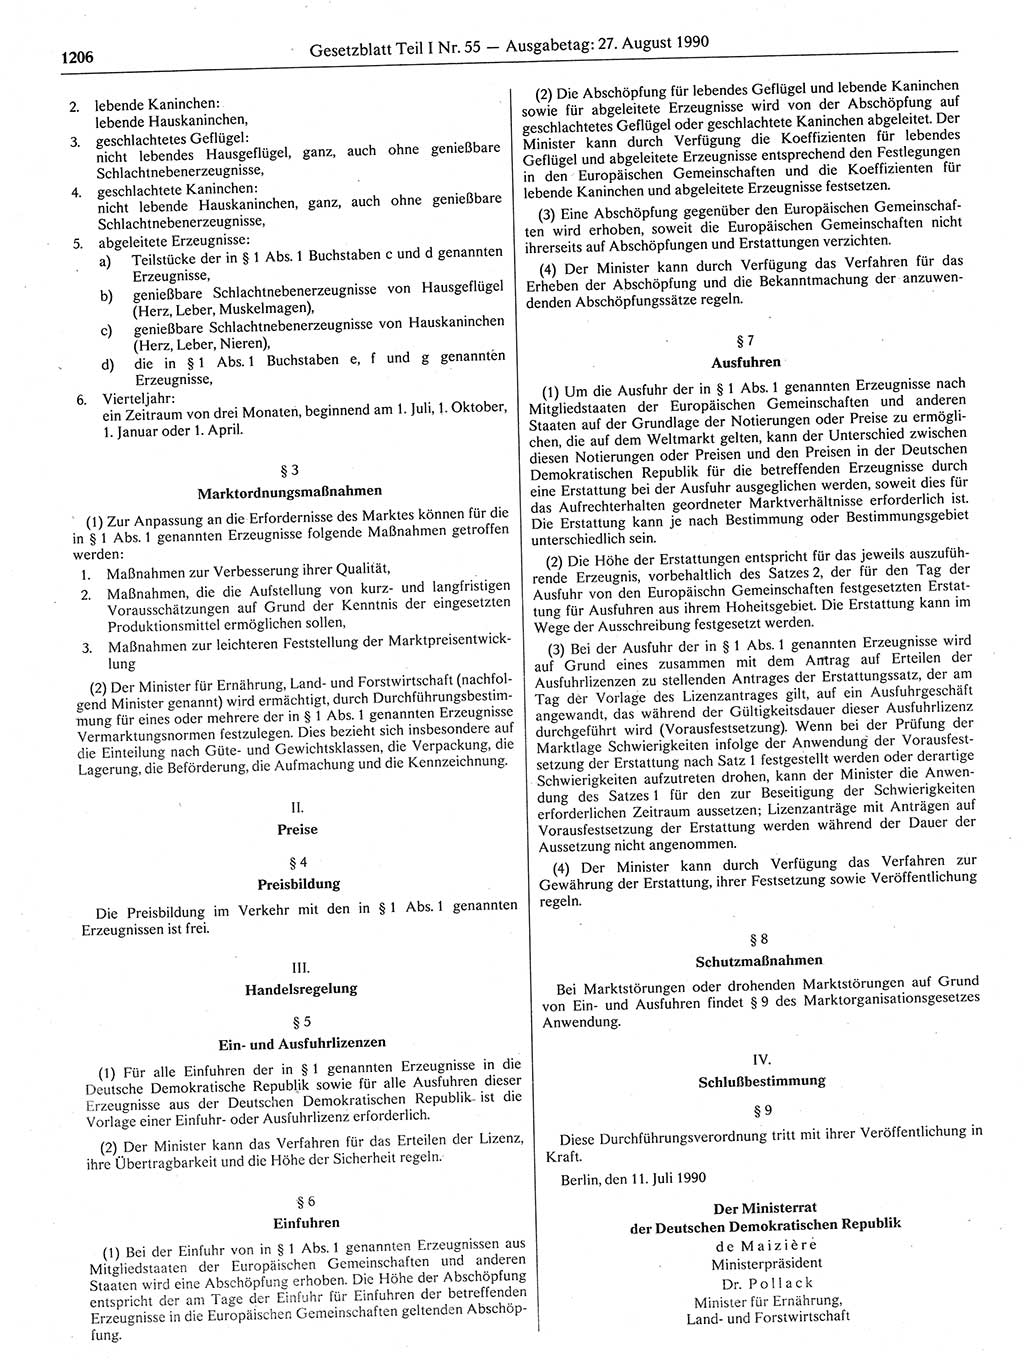 Gesetzblatt (GBl.) der Deutschen Demokratischen Republik (DDR) Teil Ⅰ 1990, Seite 1206 (GBl. DDR Ⅰ 1990, S. 1206)